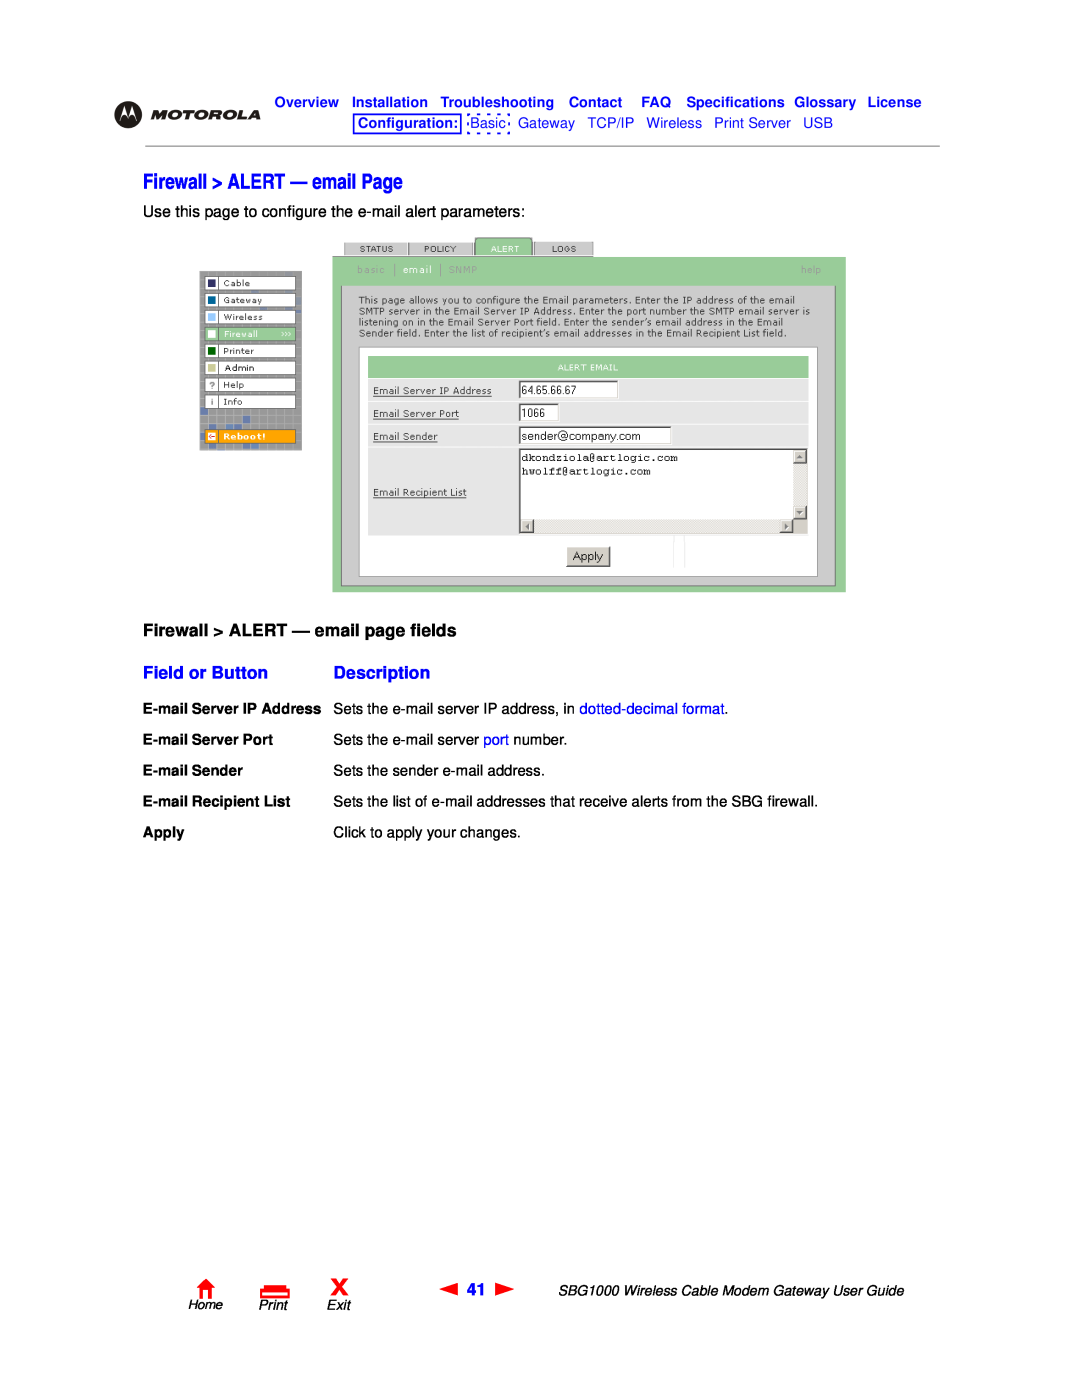 Motorola SBG1000 manual Firewall ALERT - email Page, Firewall ALERT - email page fields, Field or Button, Description 